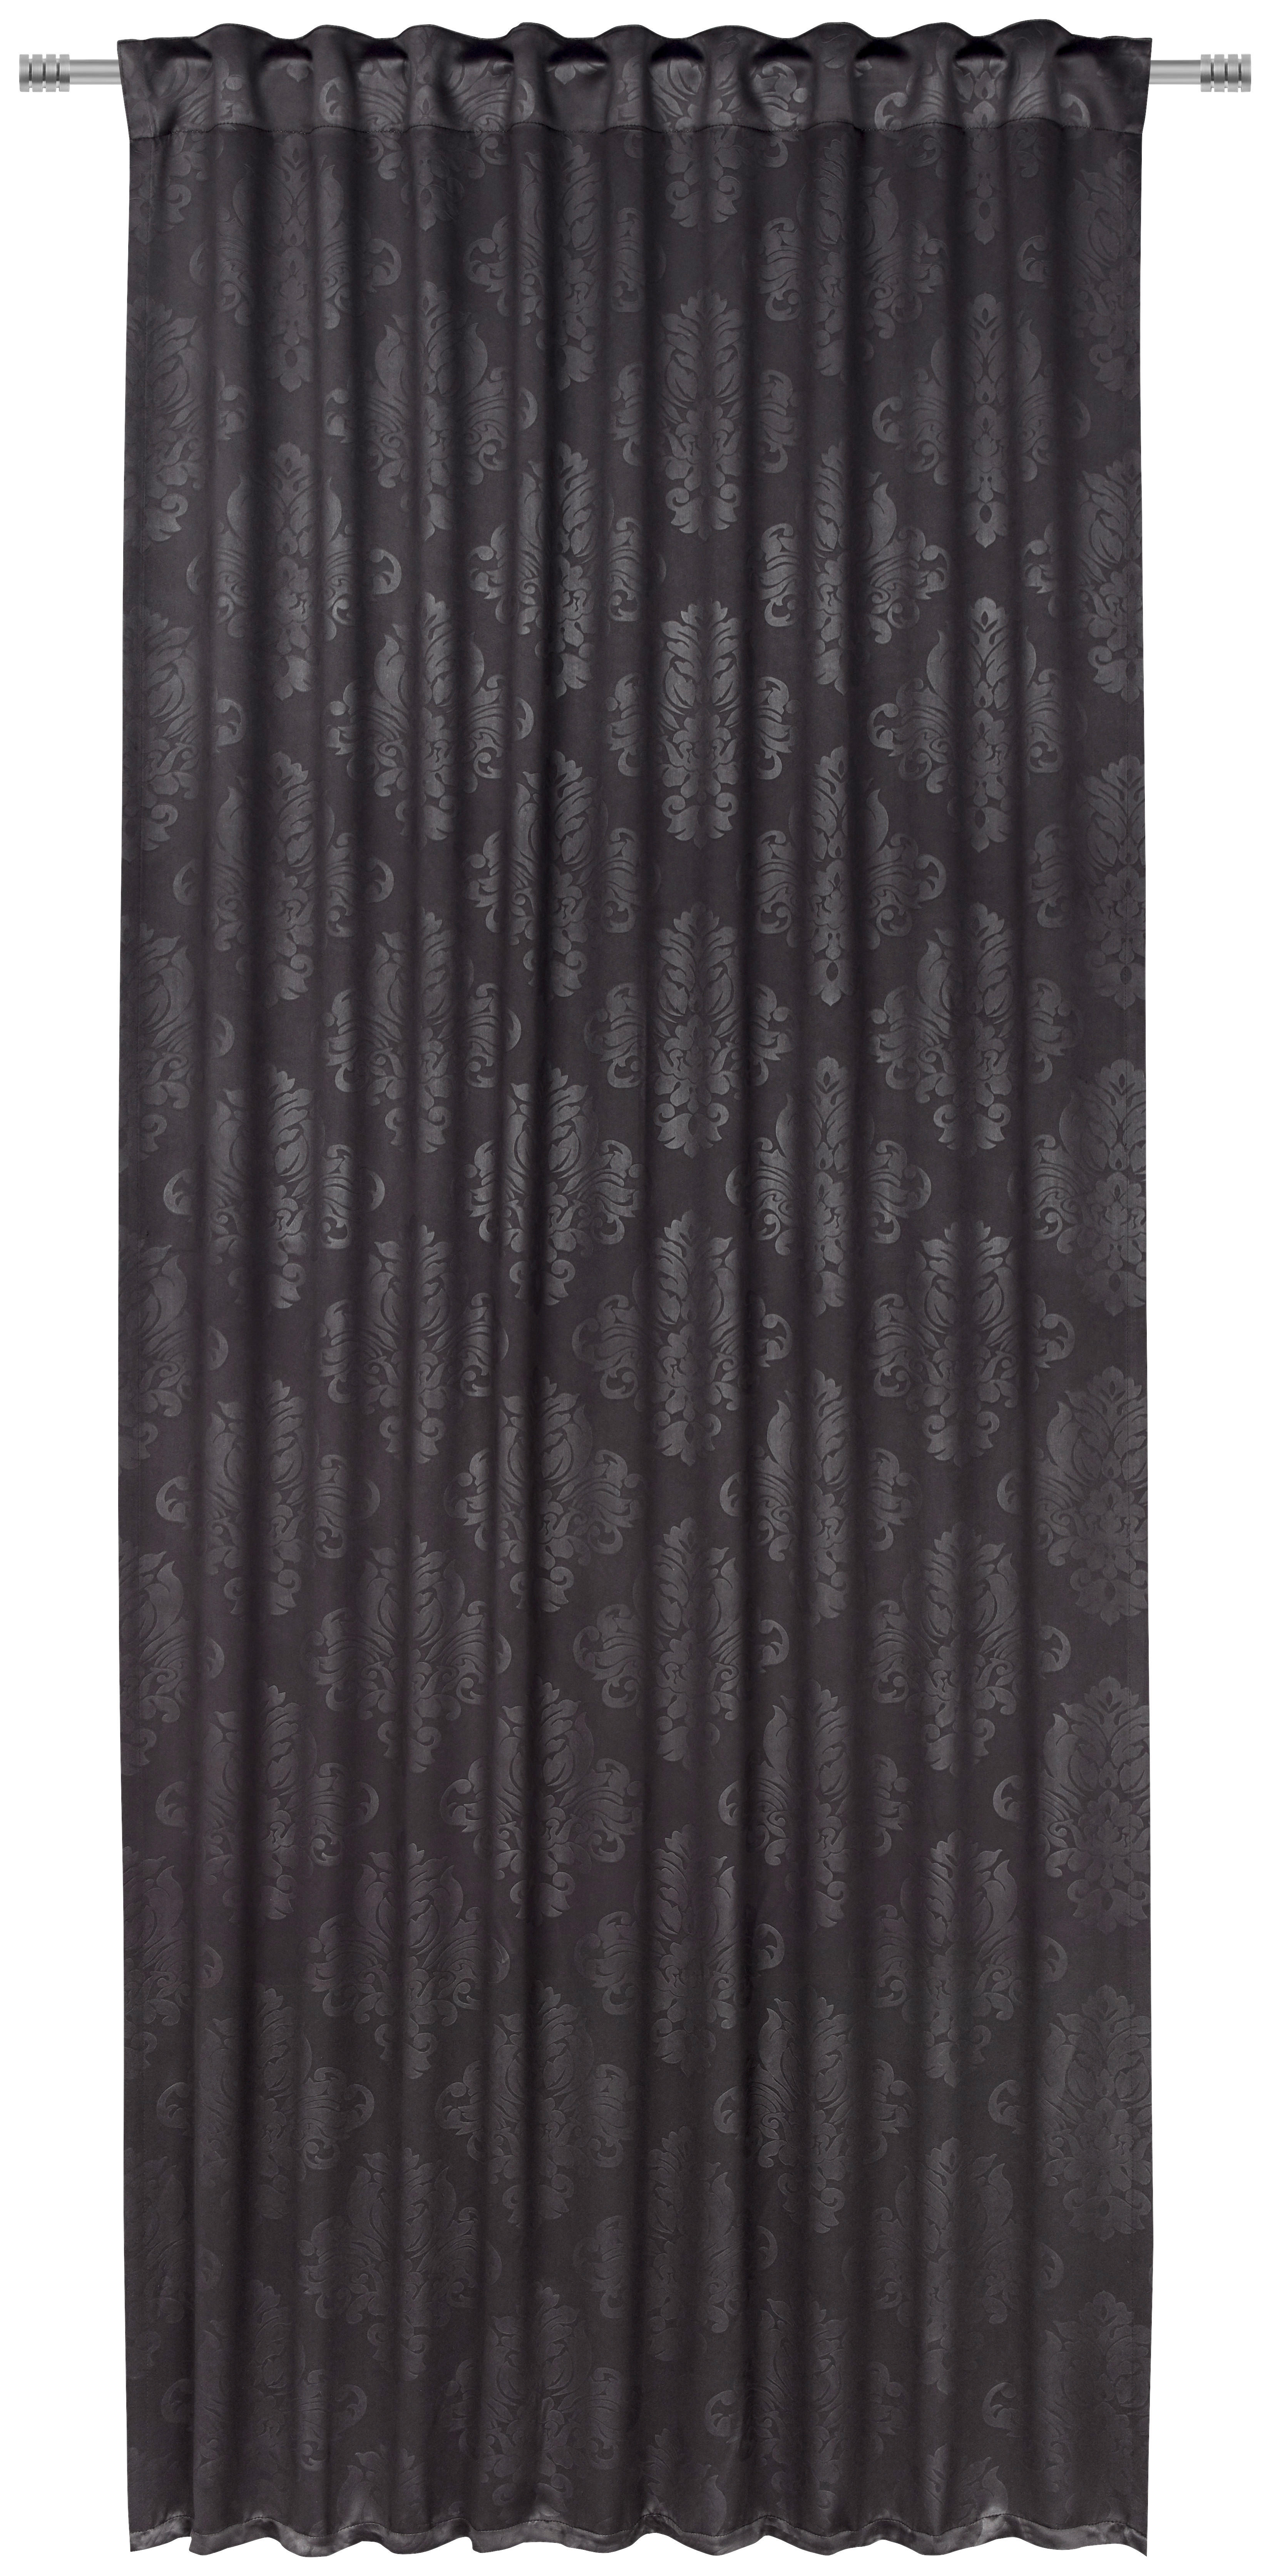 FERTIGVORHANG black-out (lichtundurchlässig)  - Schwarz, Konventionell, Textil (135/245cm) - Boxxx